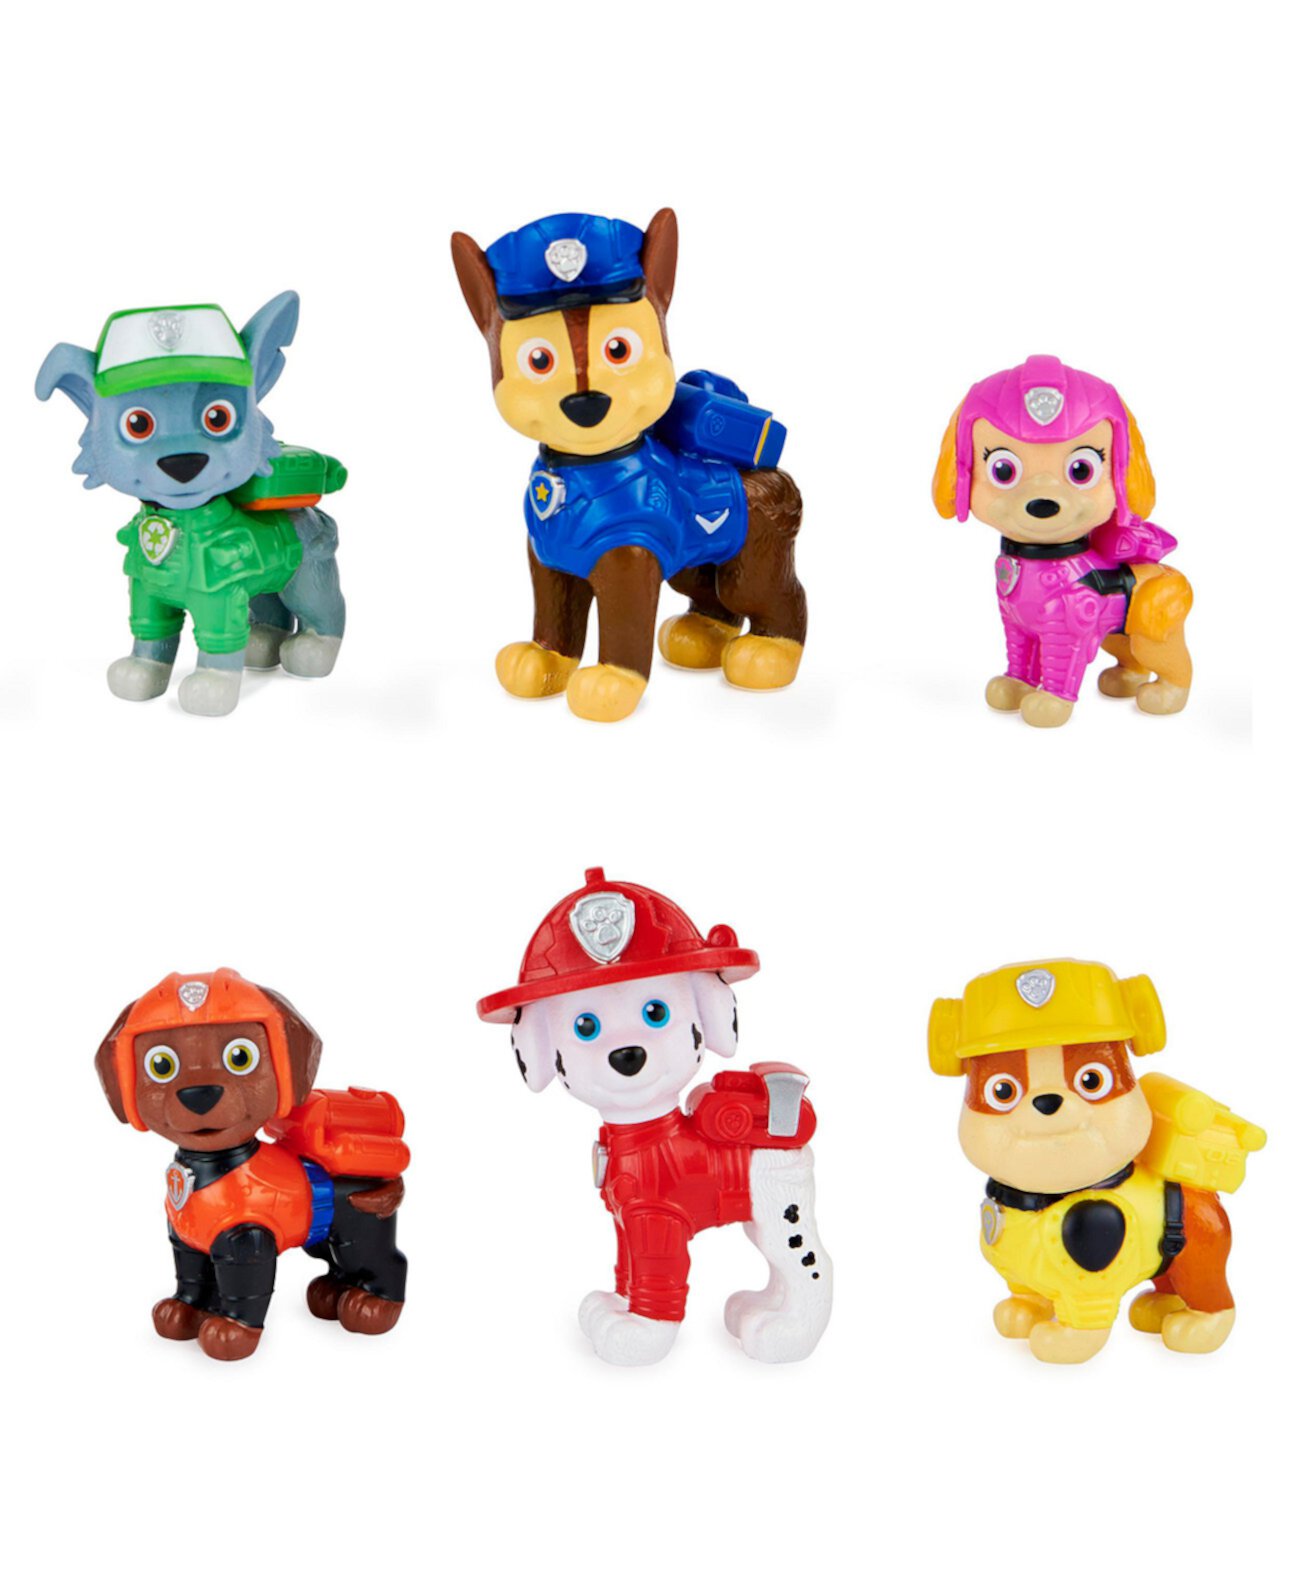 Подарочный набор Movie Pups с 6 коллекционными игрушечными фигурками Детские игрушки для детей от 3 лет Paw Patrol